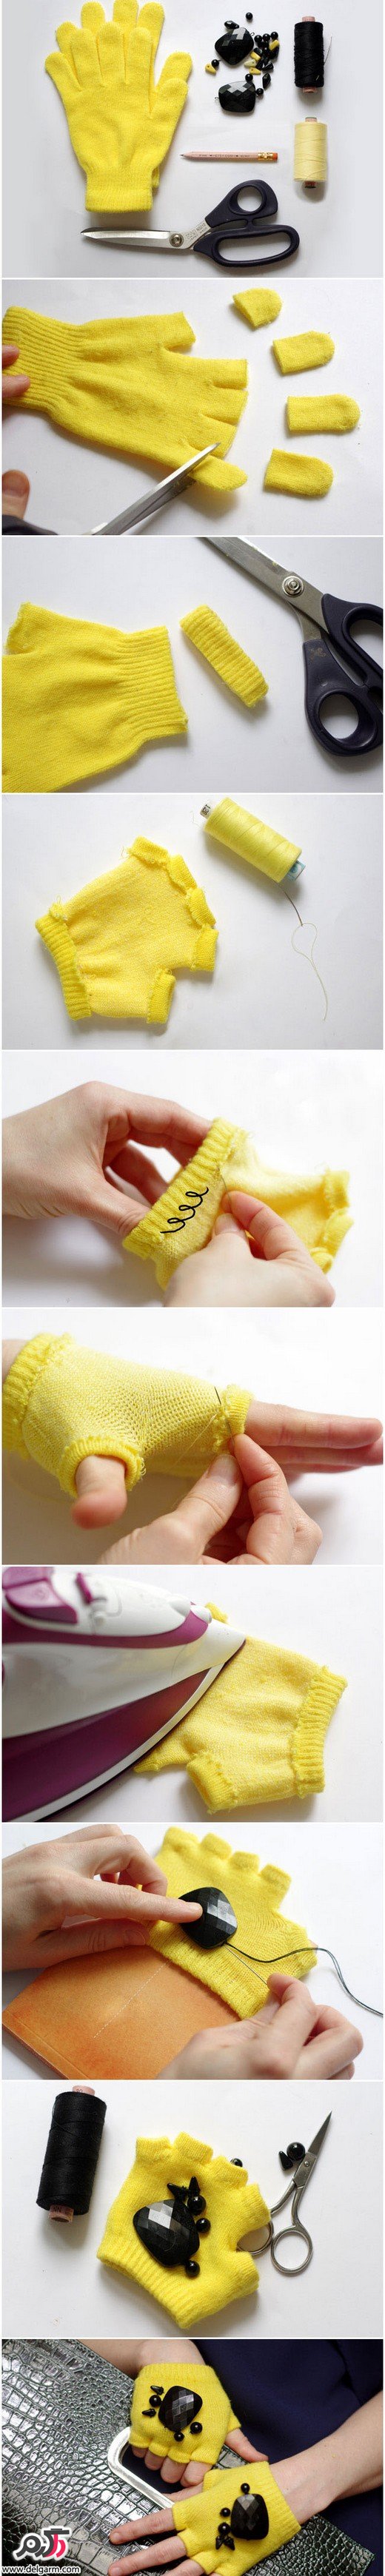 درست کردن دستکش بافتنی دخترانه